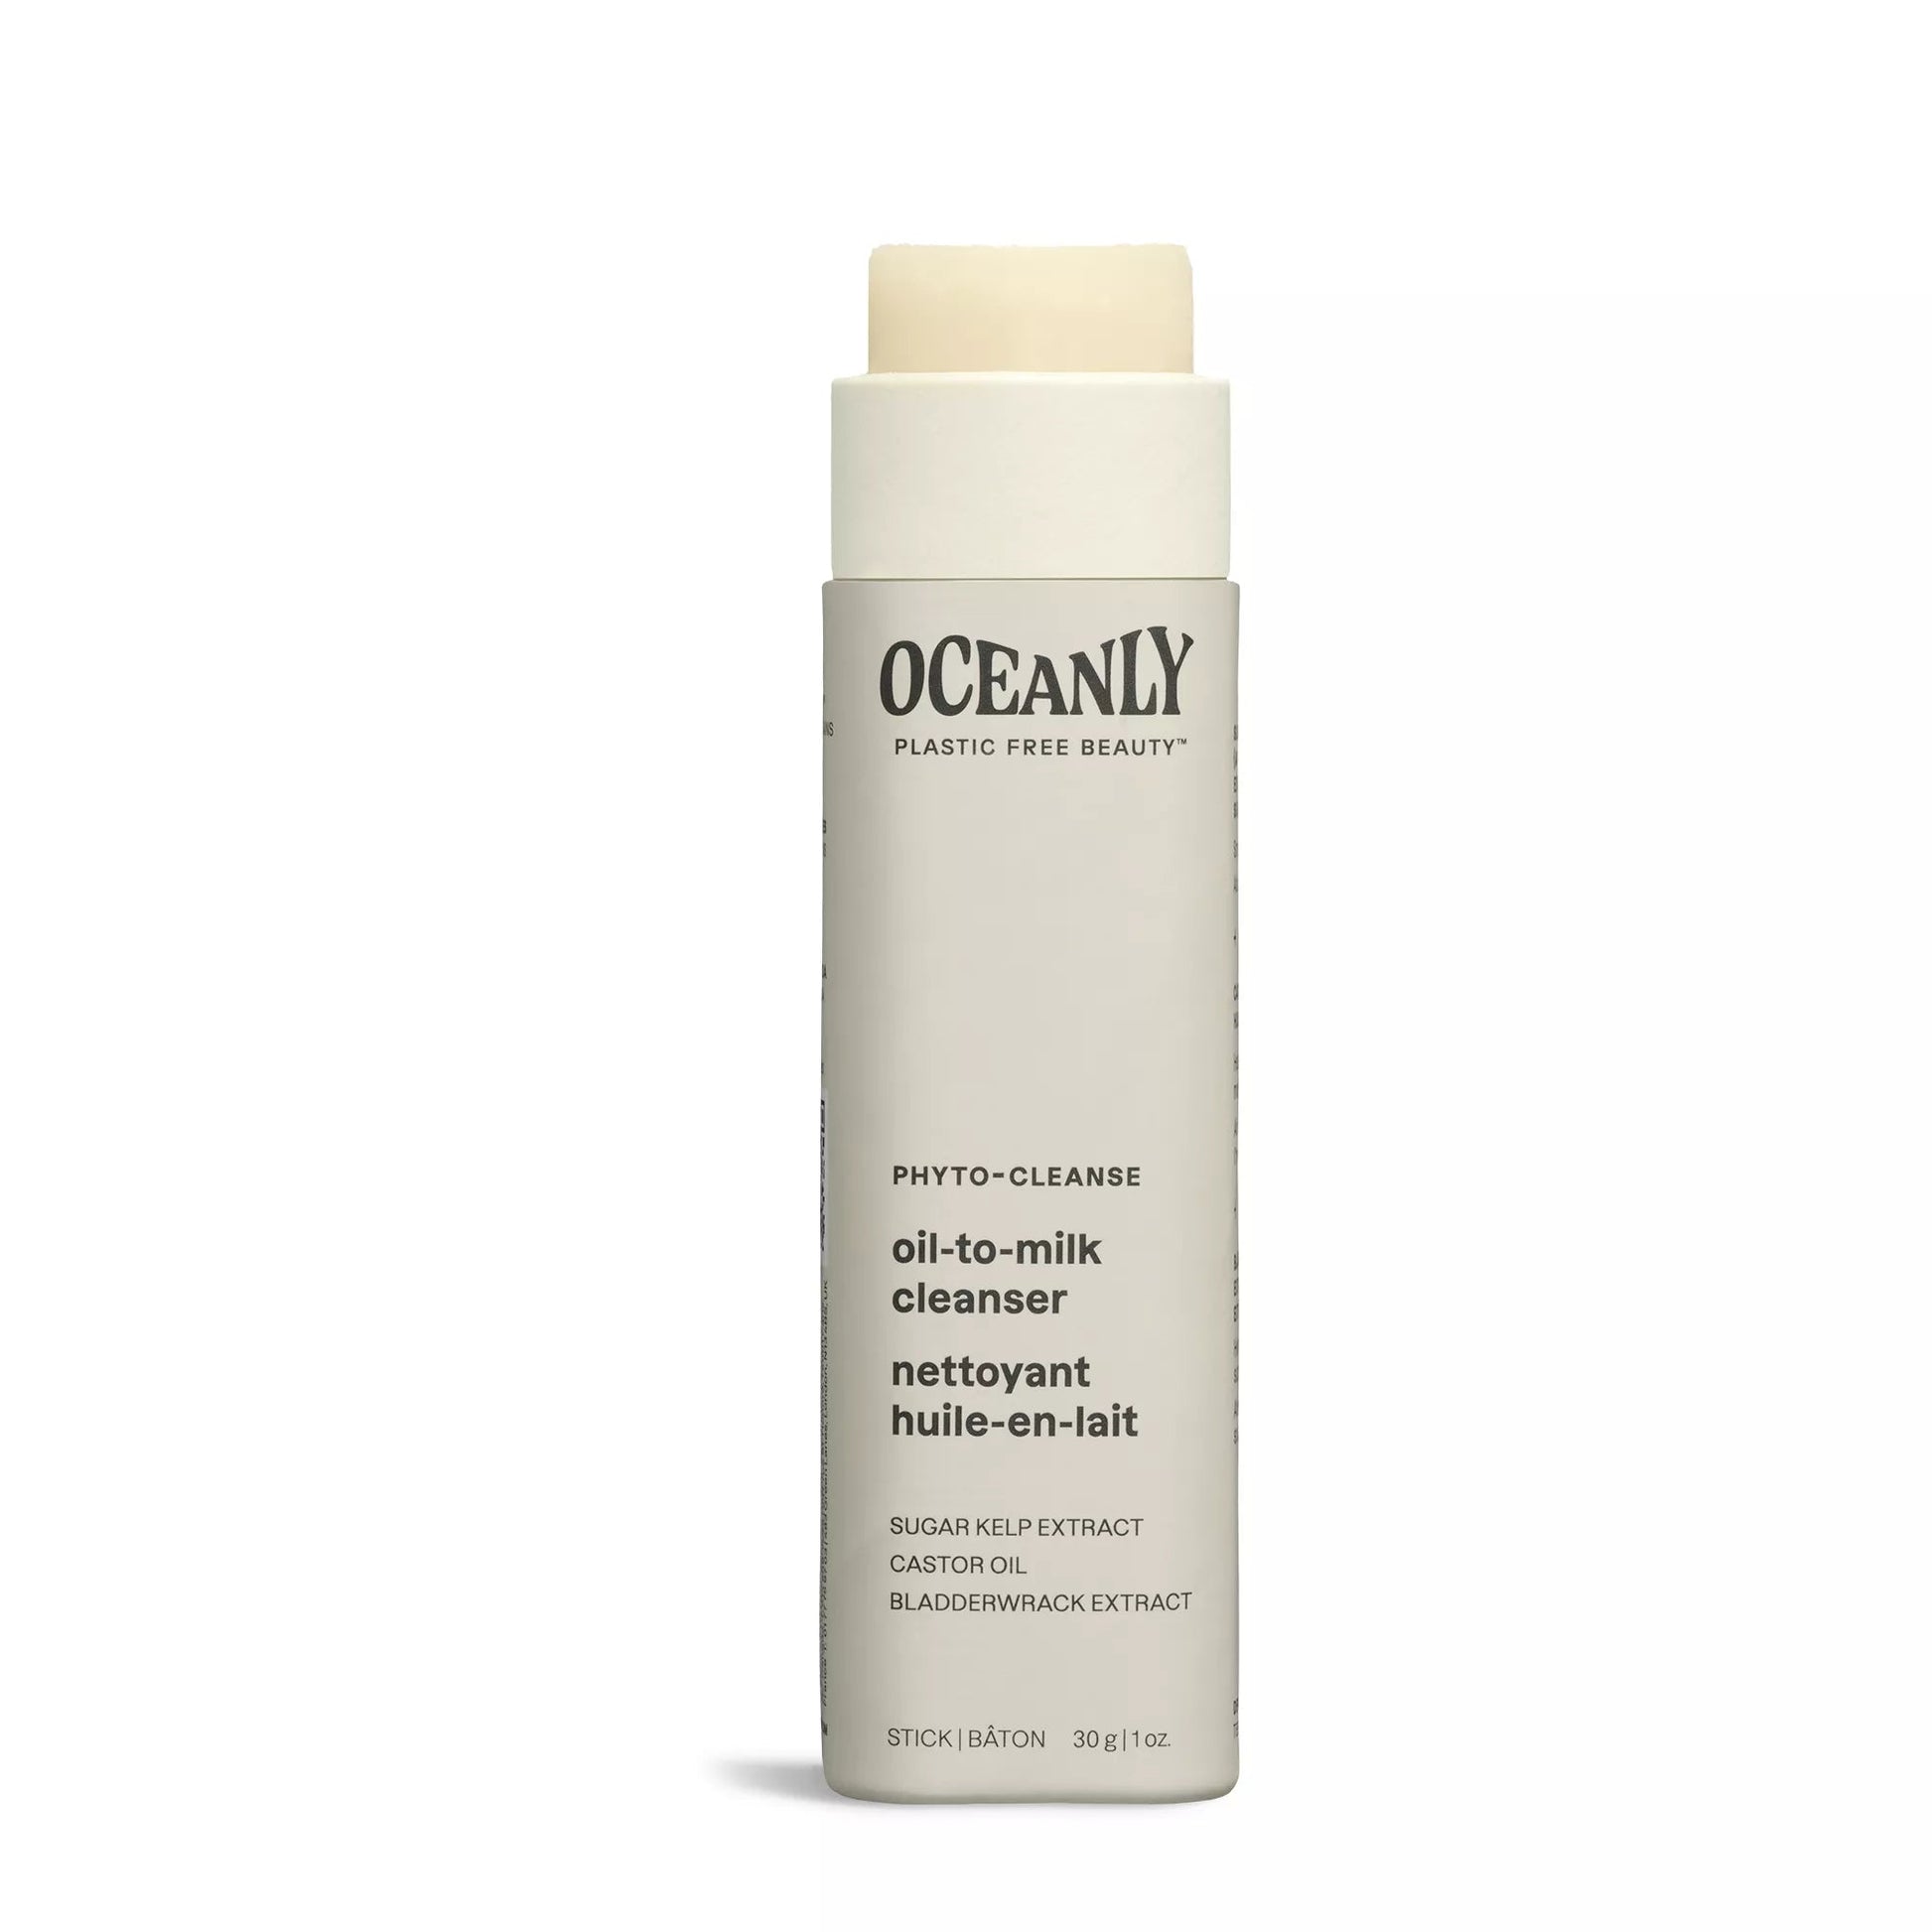 ATTITUDE oceanly phyto-cleanse nettoyant huile-en-lait 16066_fr? 30g Sans odeur